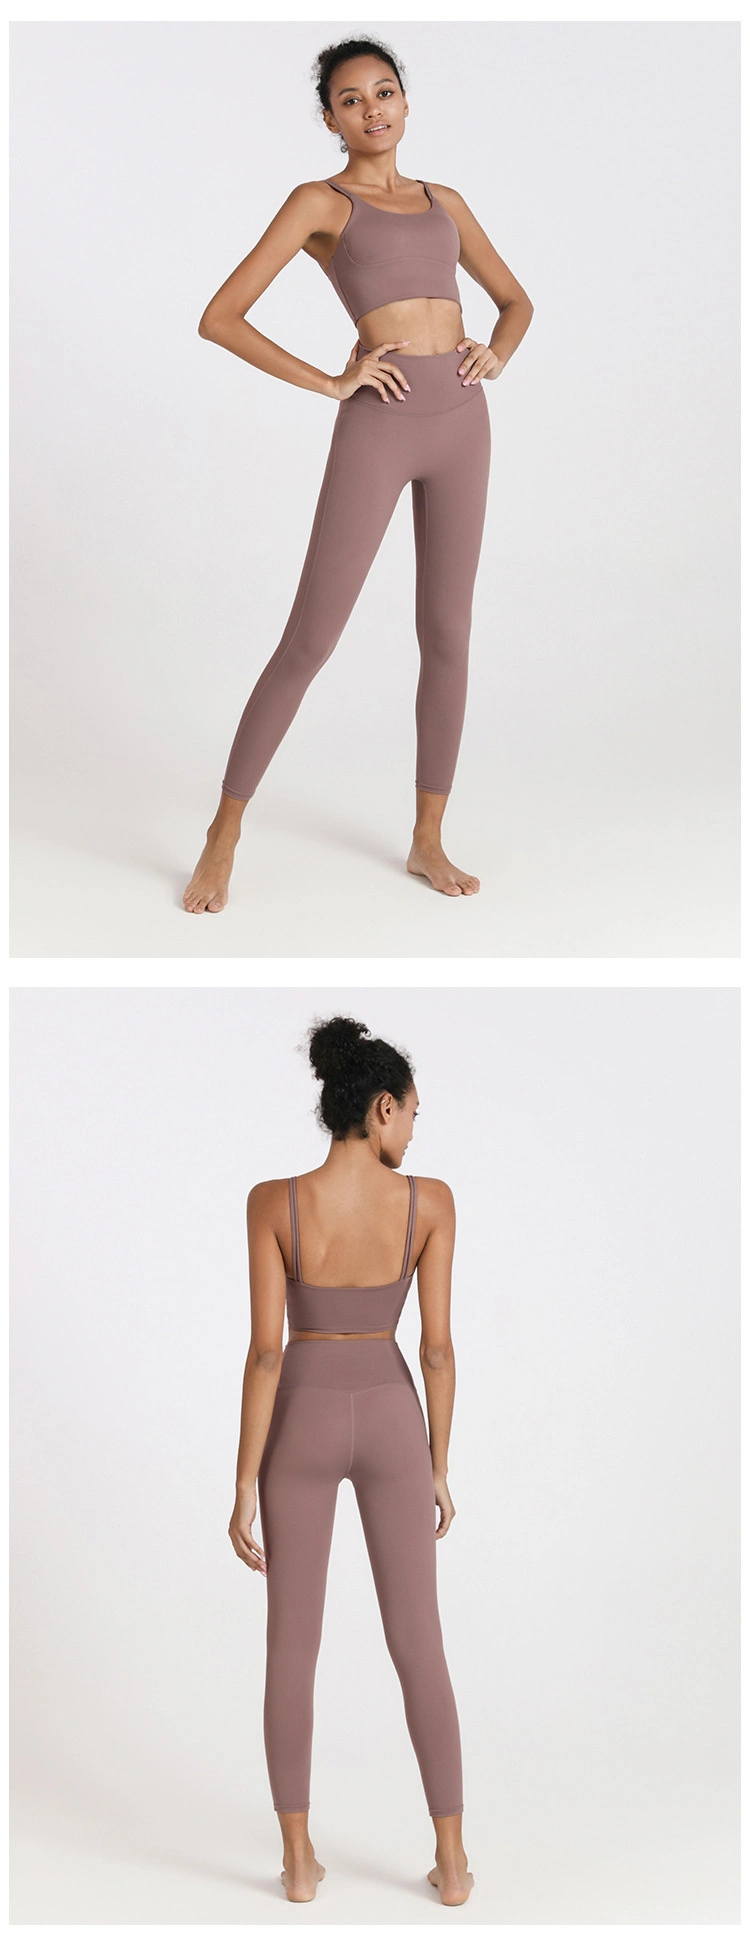 New Skinny Belt Sports Underwear Women′s Solid Color Nude Shock Proof Yoga Bra Vest Women′s Fitness Underwear